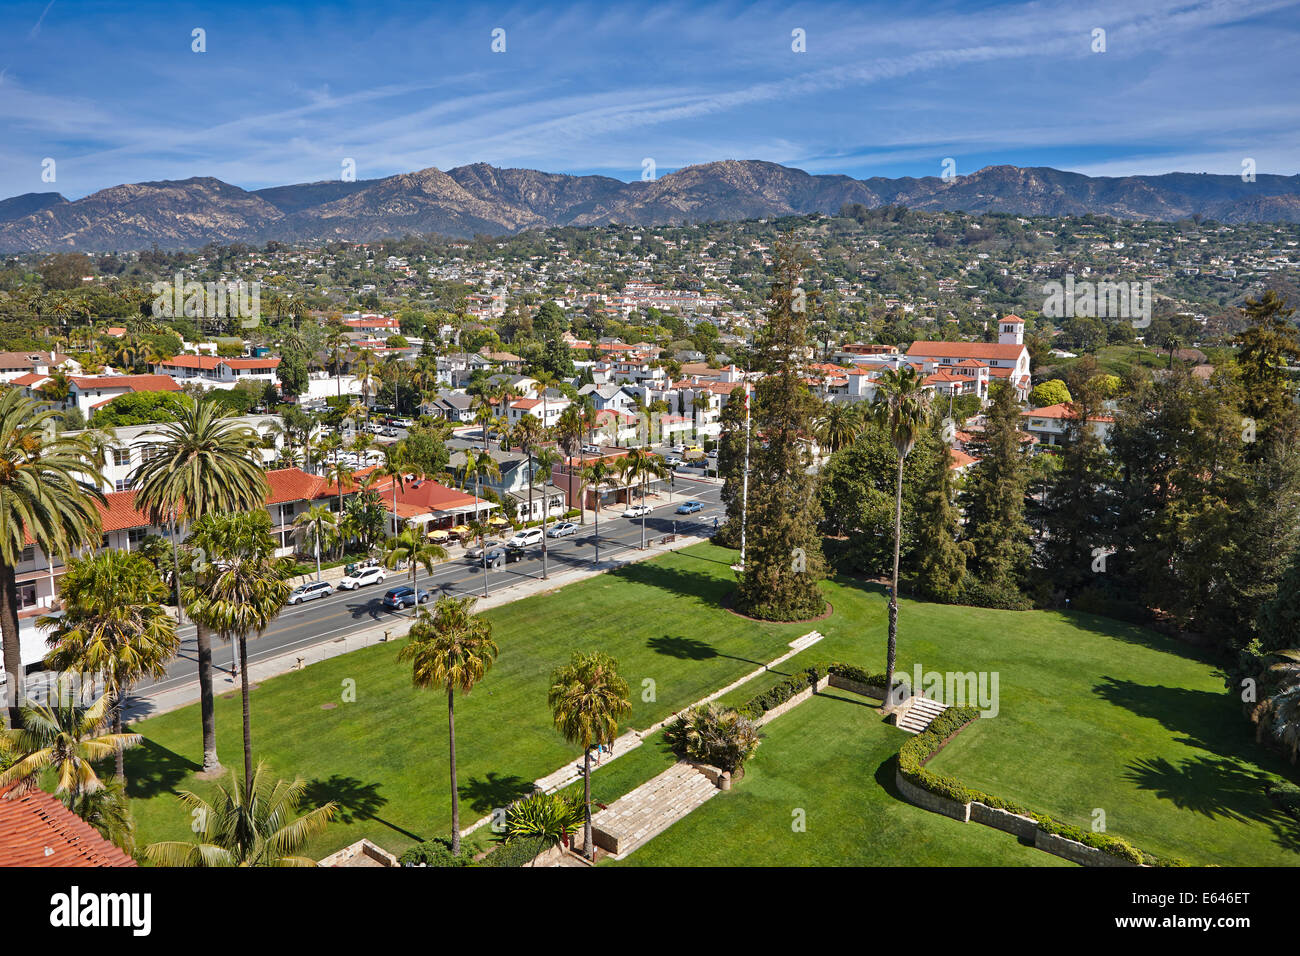 Santa Barbara aerial view. Santa Barbara, California, USA. Stock Photo